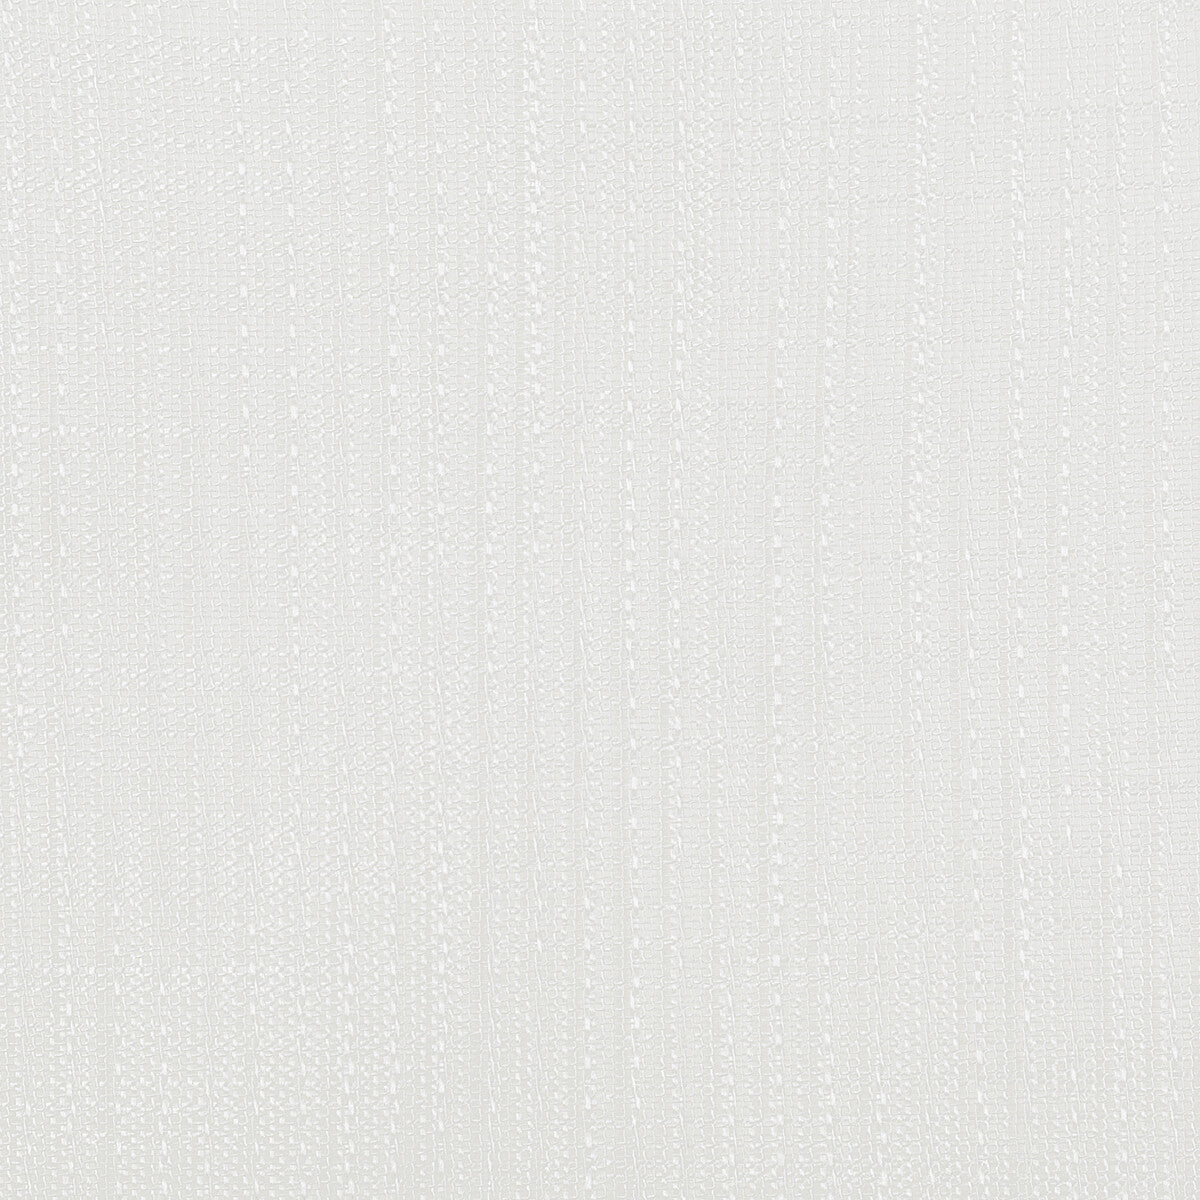 Kravet Basics fabric in 4760-11 color - pattern 4760.11.0 - by Kravet Basics